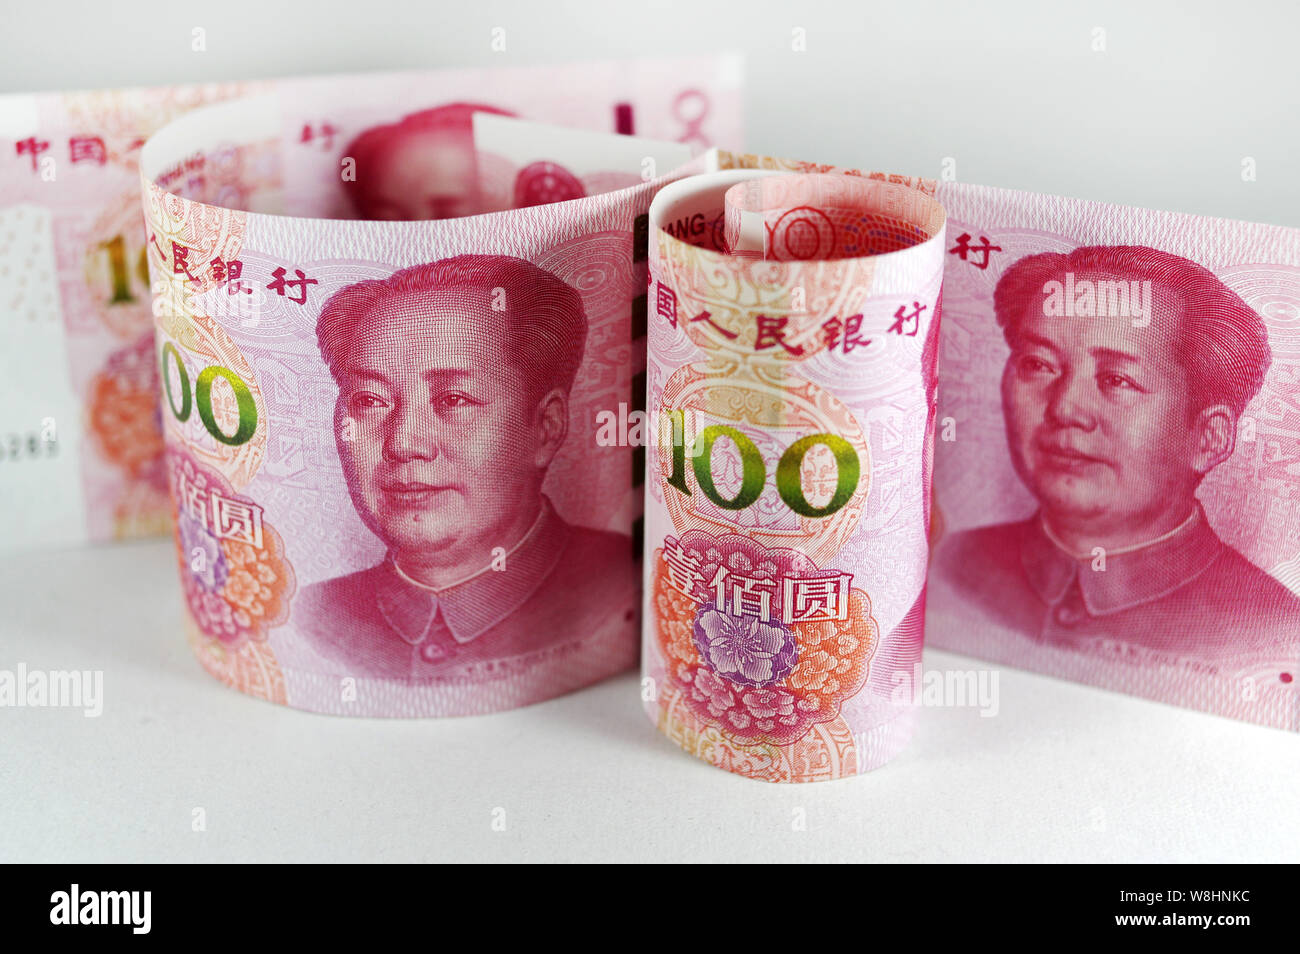 Illustration de yuan RMB (renminbi) Billets en euros Le Fonds monétaire international a admis le dans son panier de monnaies de réserve d'élite le lundi Banque D'Images